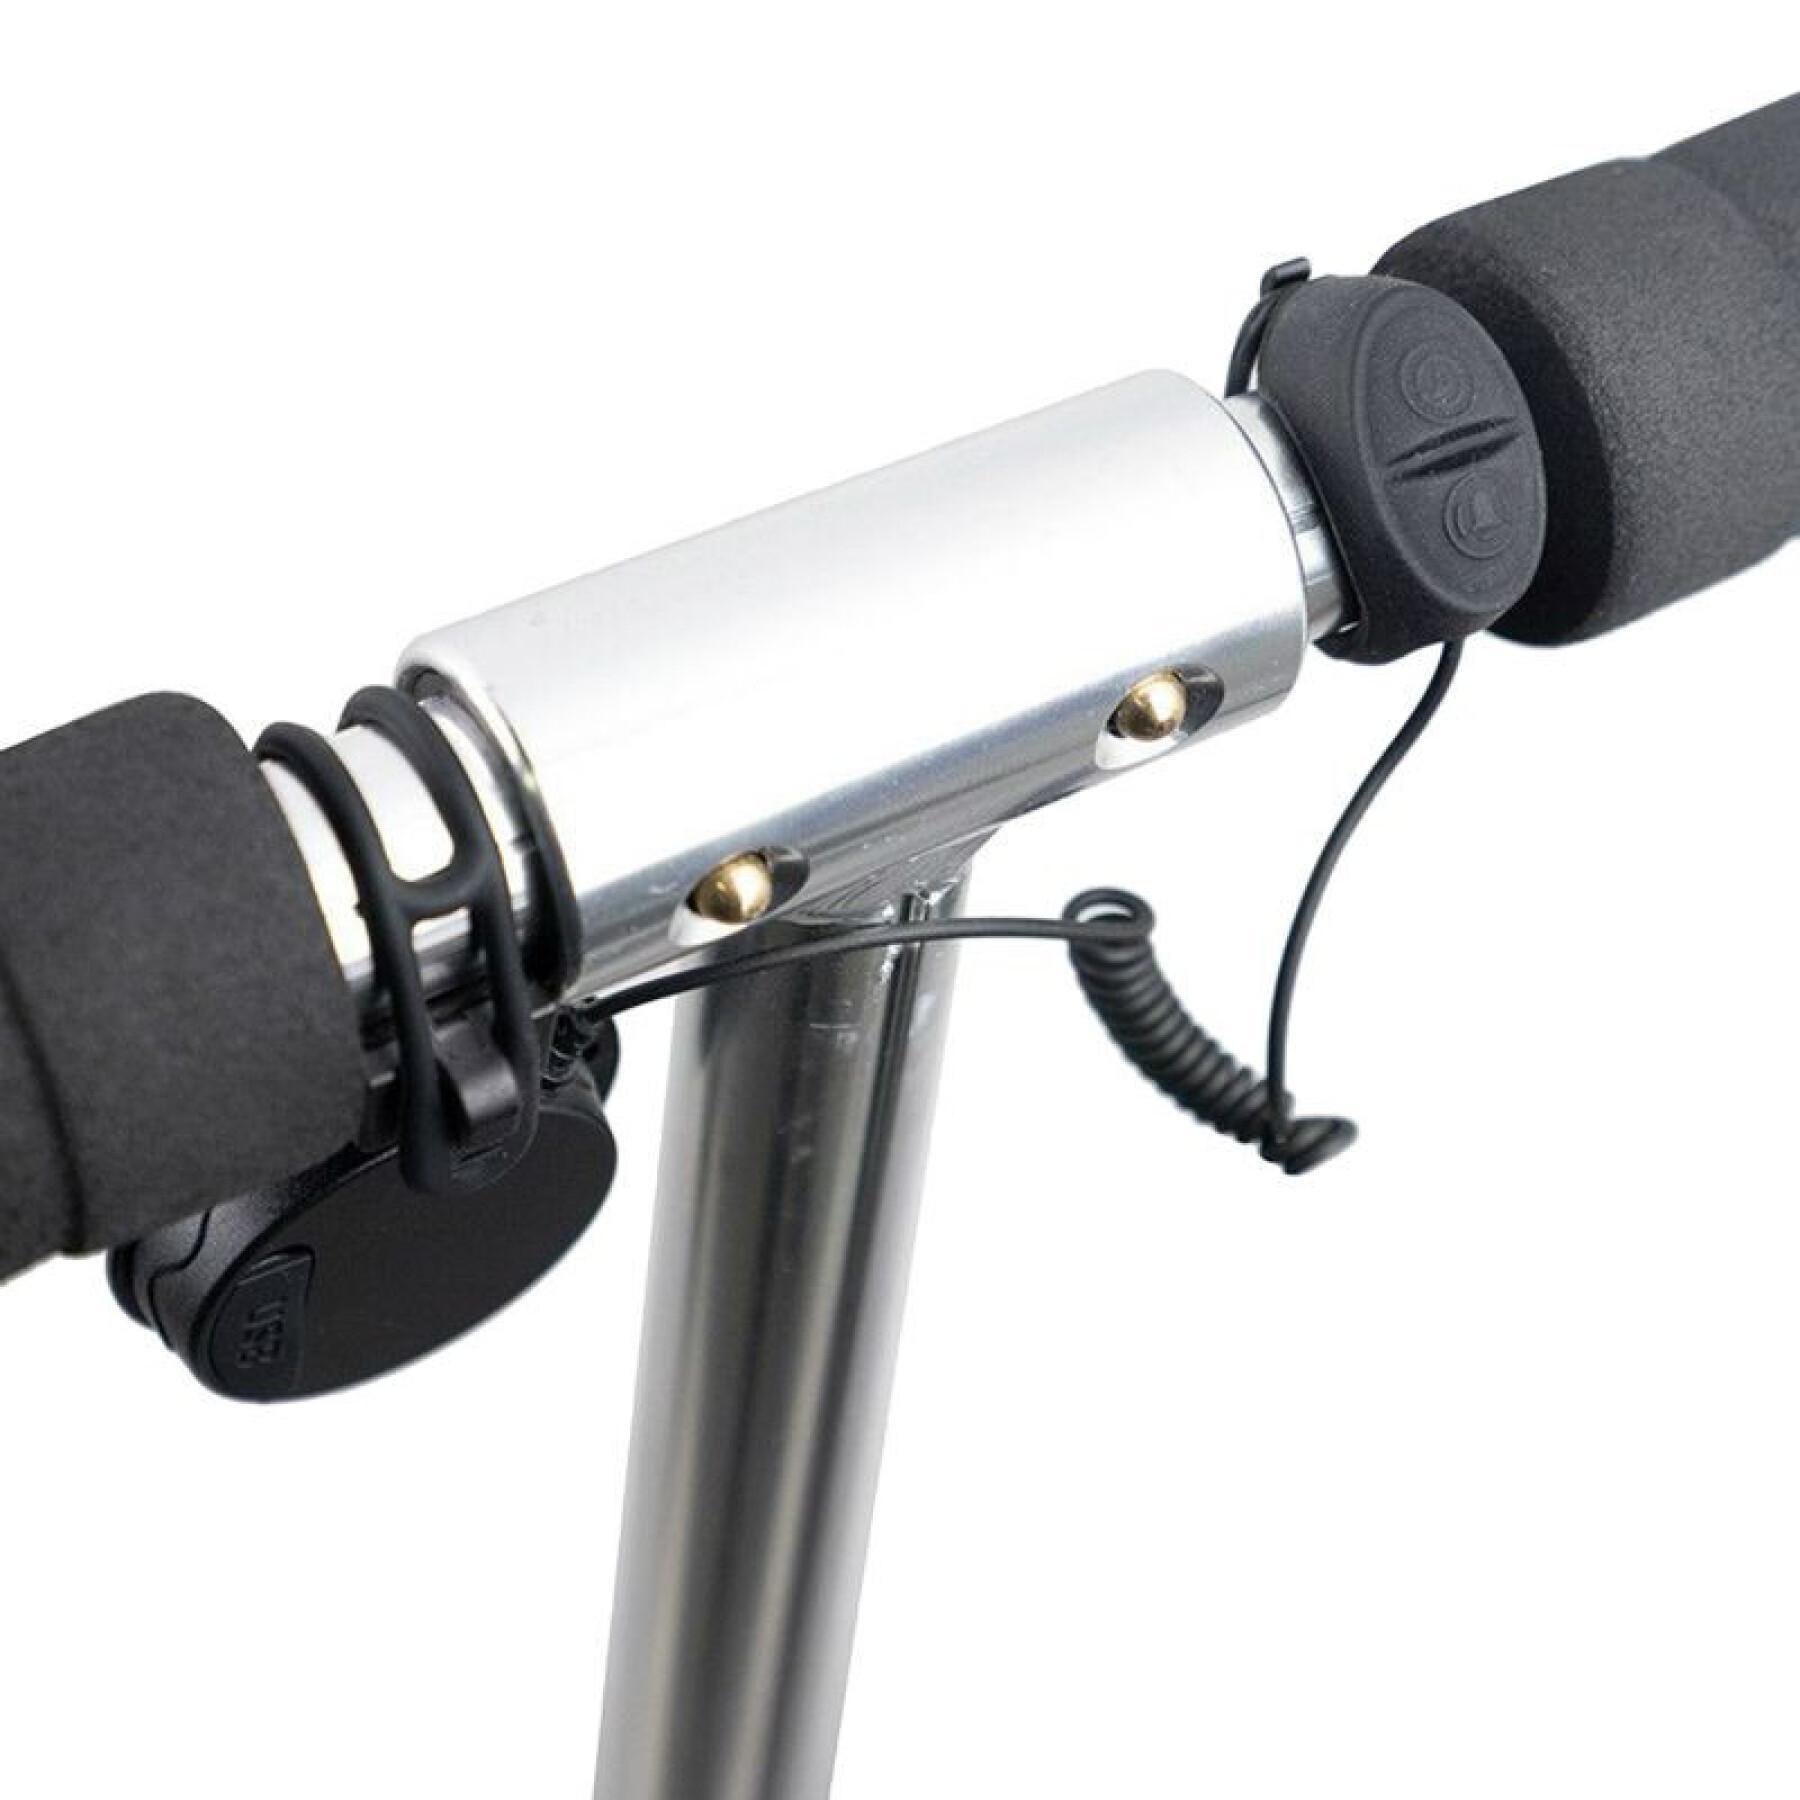 Timbre - claxon bicicleta - usb recargable scooter electrónico - 4 sonidos 110-120 decibelios niño P2R